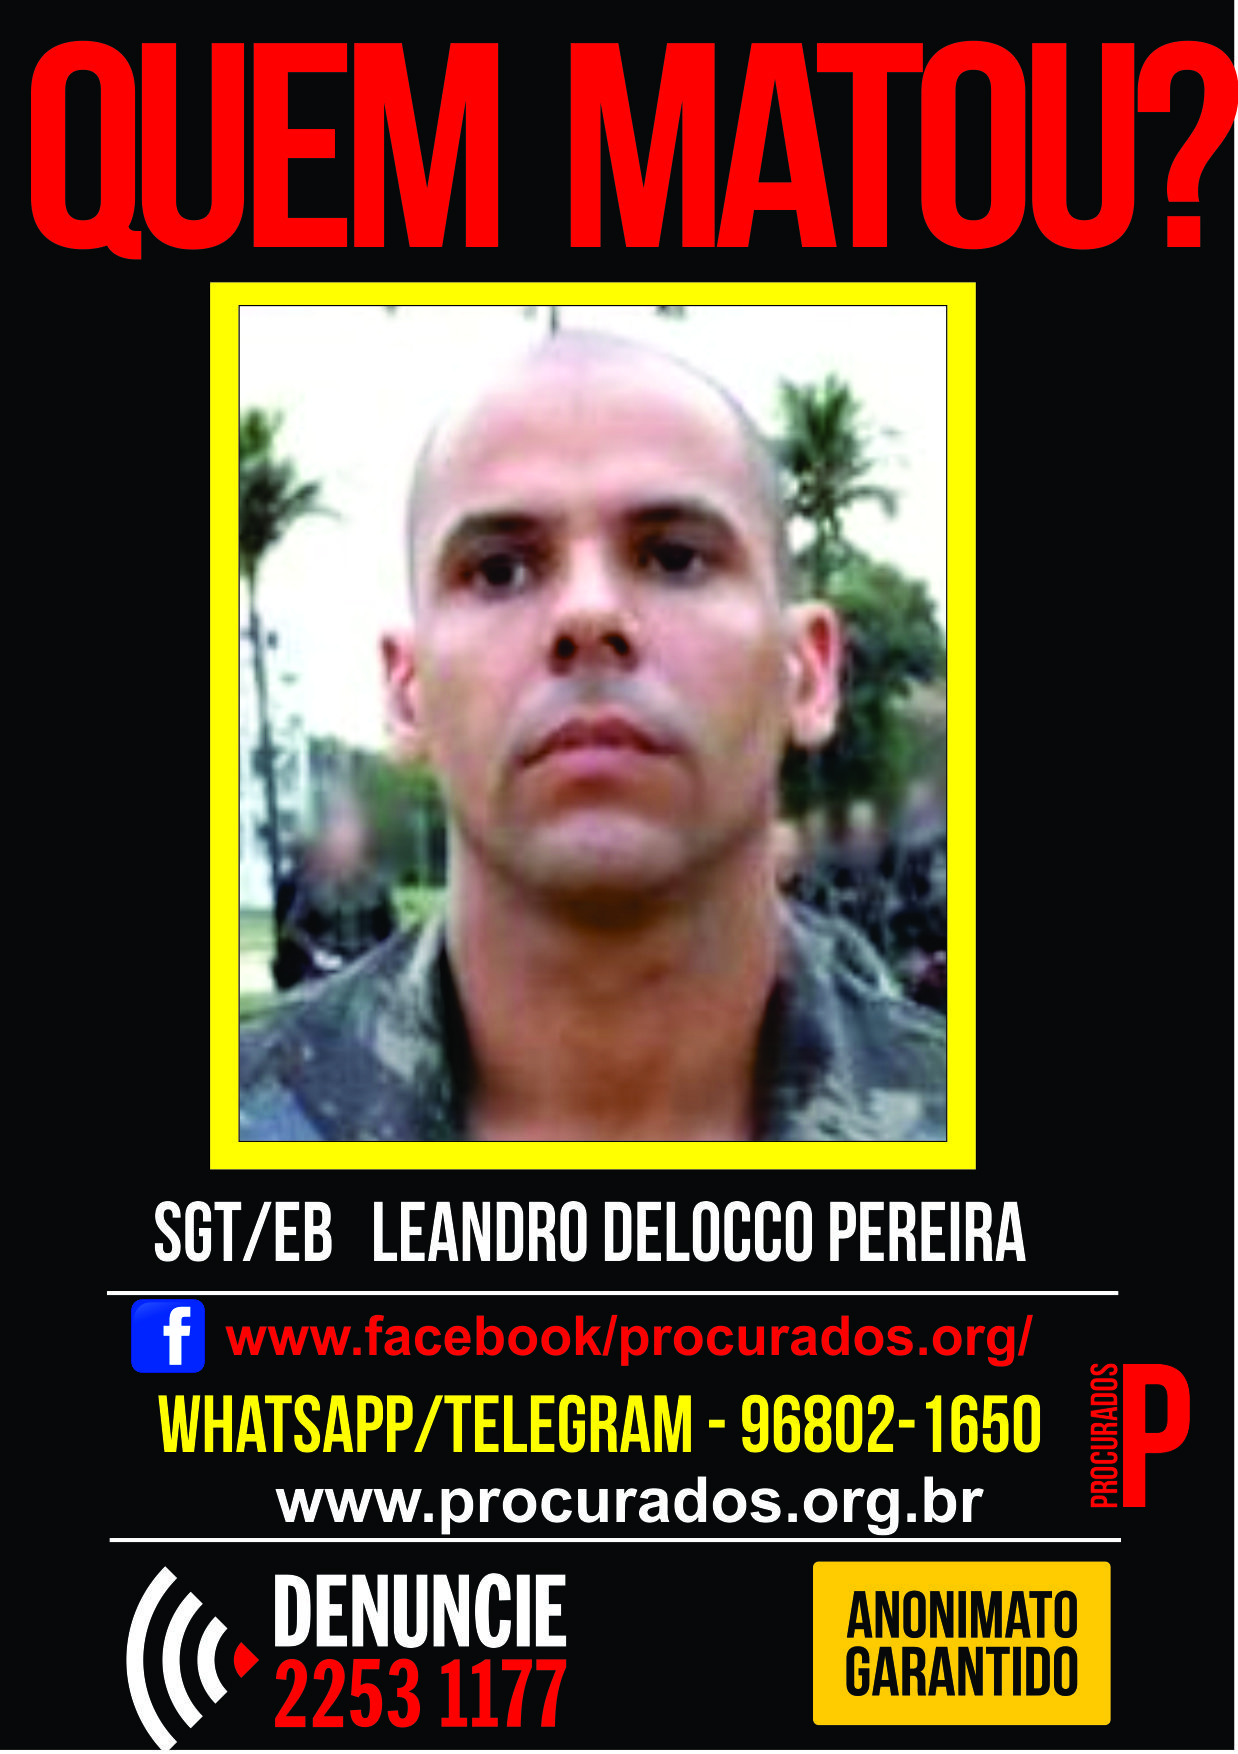 Portal dos Procurados pede informações sobre os assassinos de sargento do Exército e de um morador da Penha